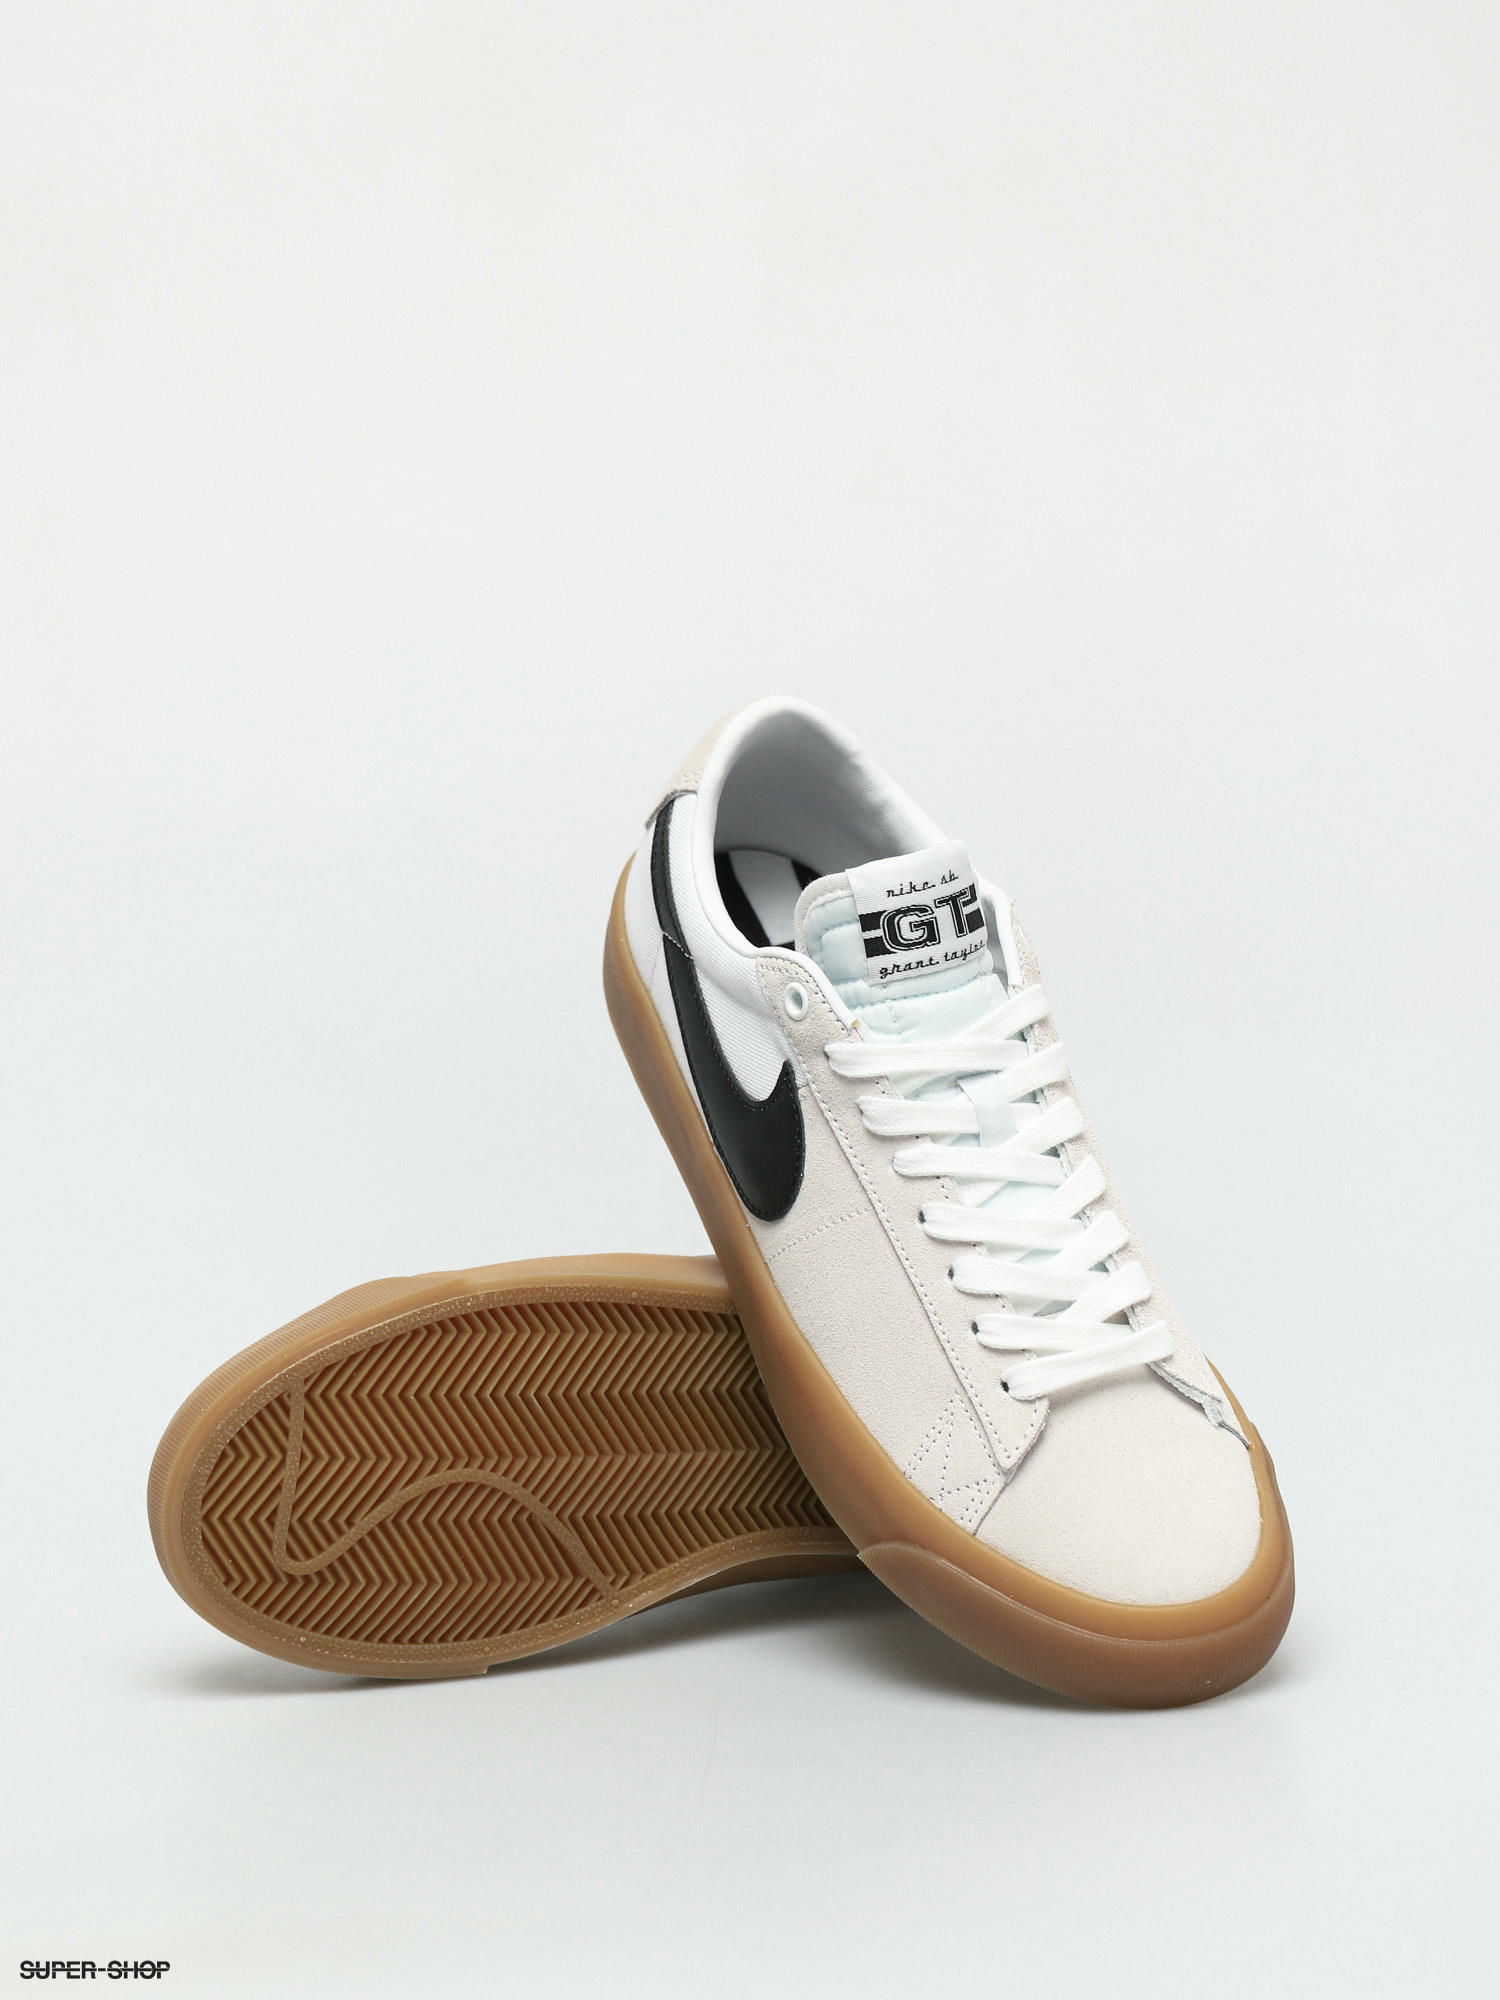 Blazer Low Pro Gt Shoes (white/black white)